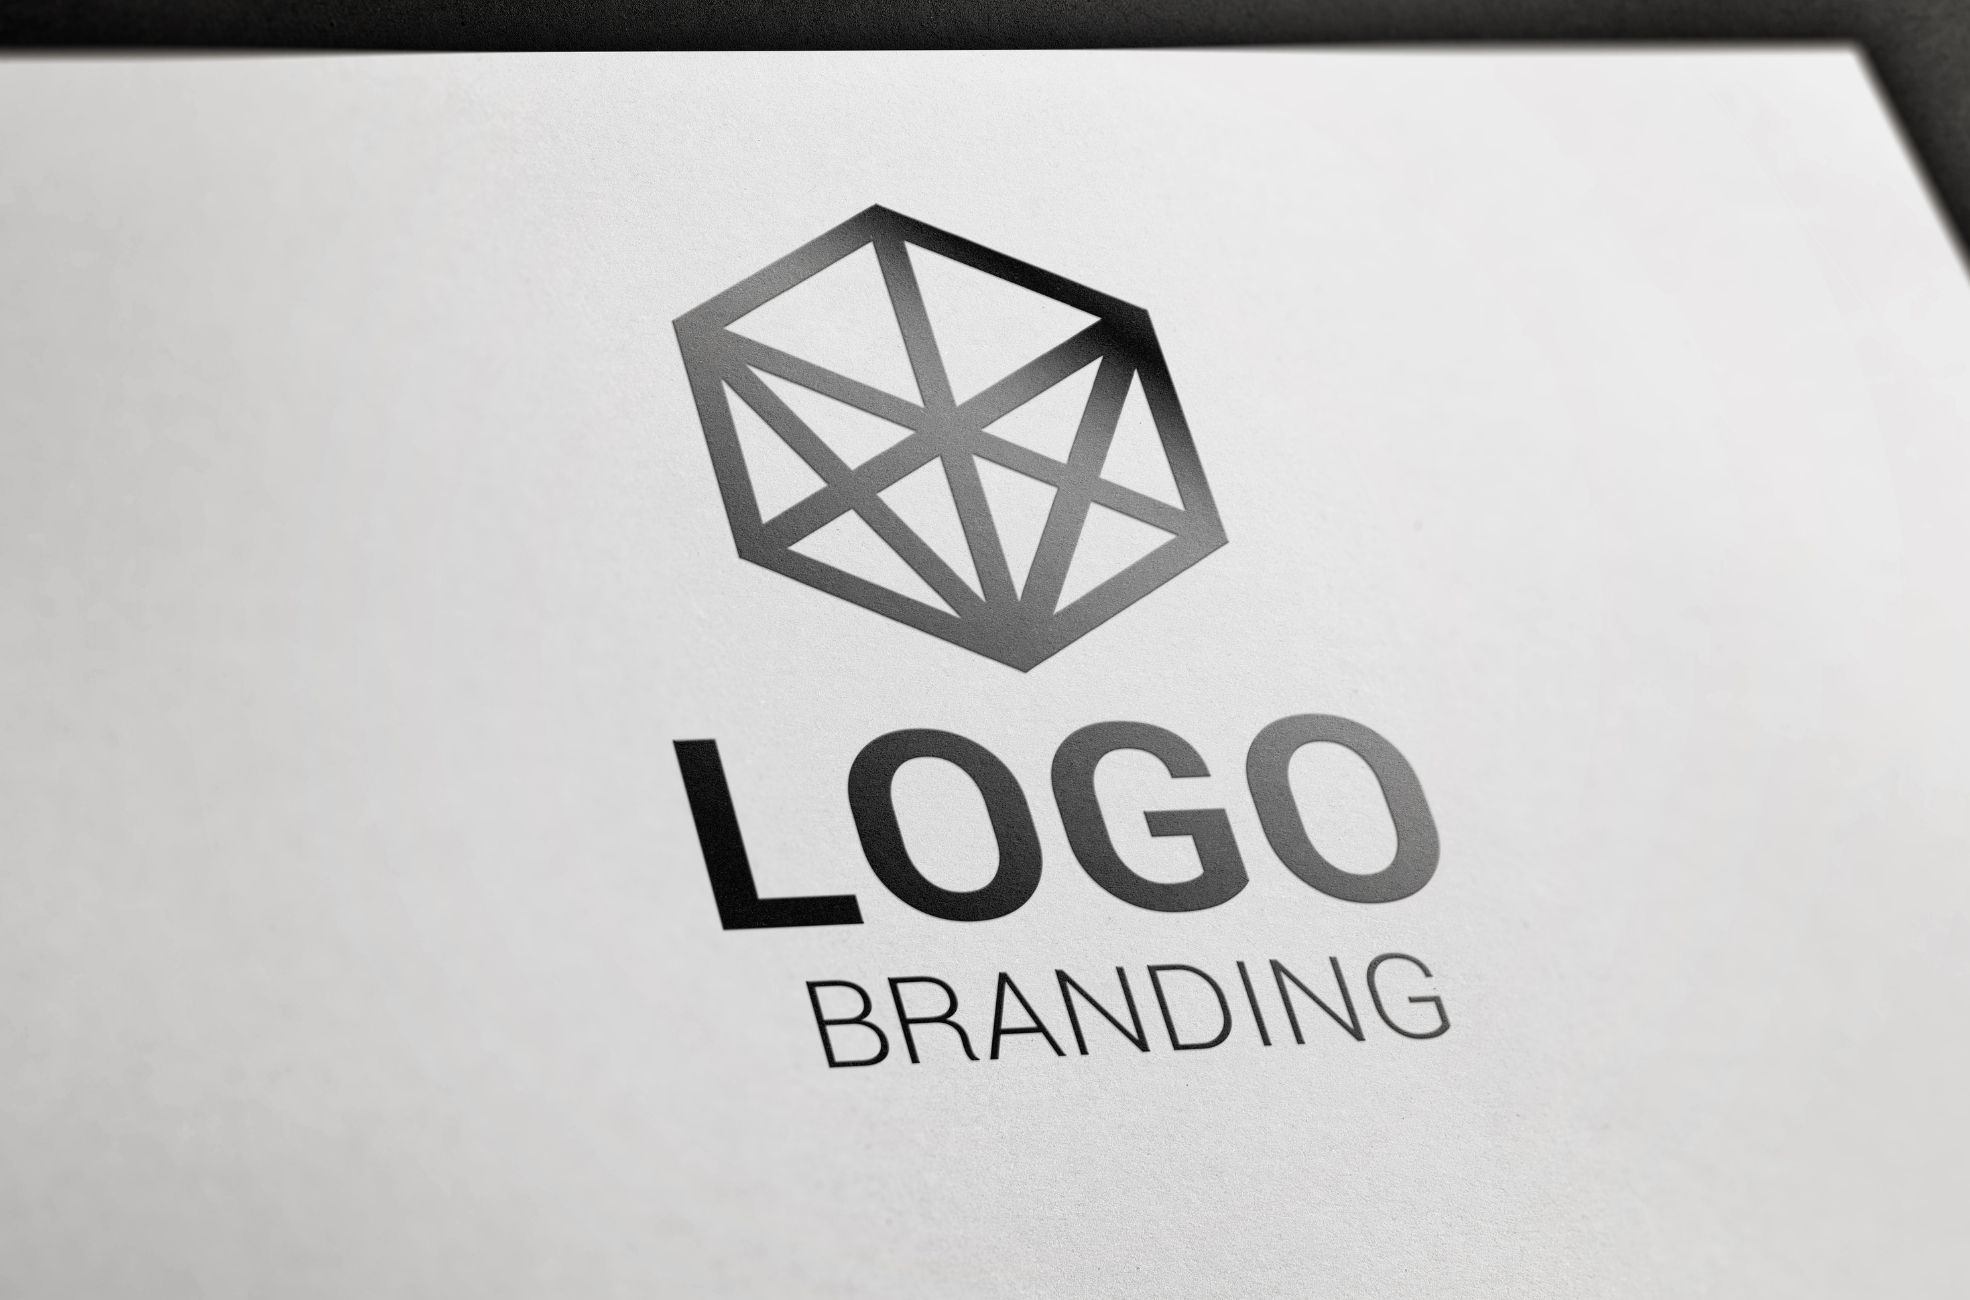 Sign Saying Logo Branding